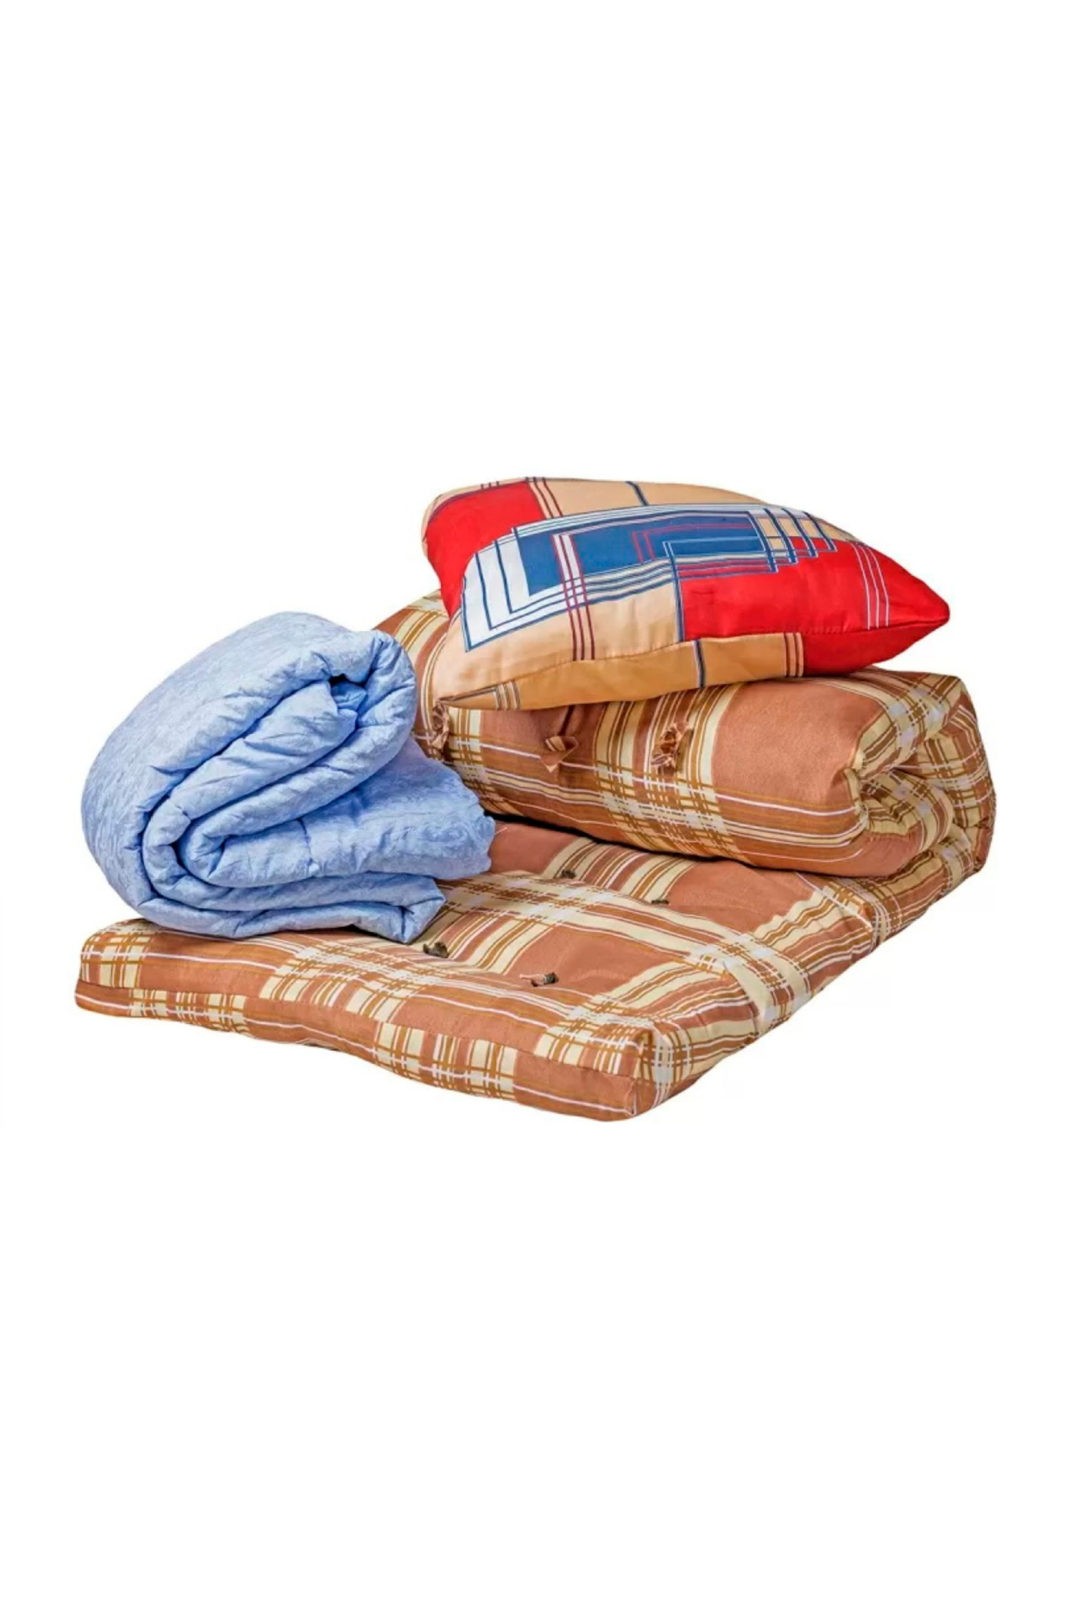 Спальный комплект для рабочих (матрас, одеяло, подушка)